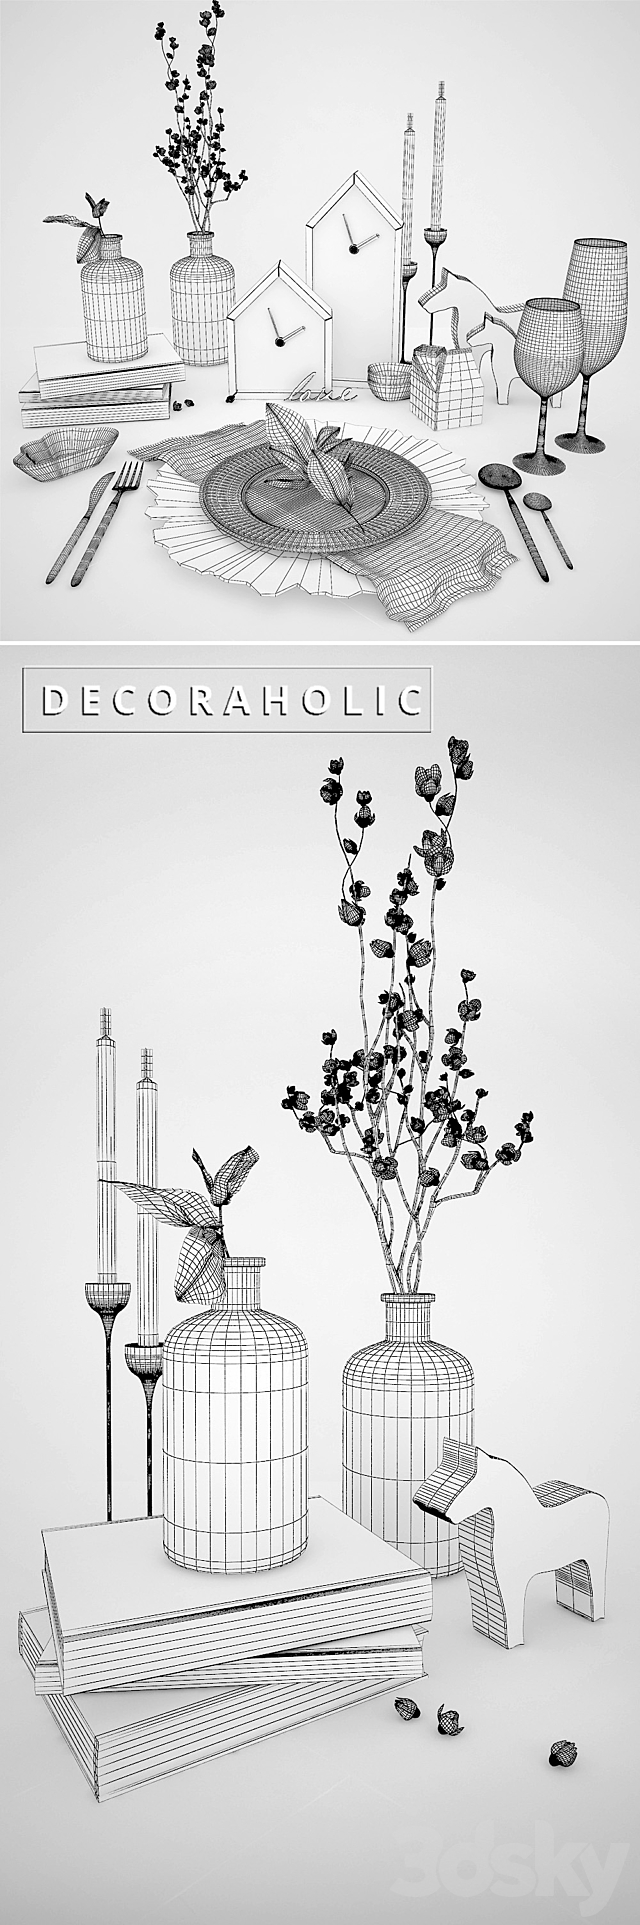 Decorative set_decoraholic_?1 3DSMax File - thumbnail 3